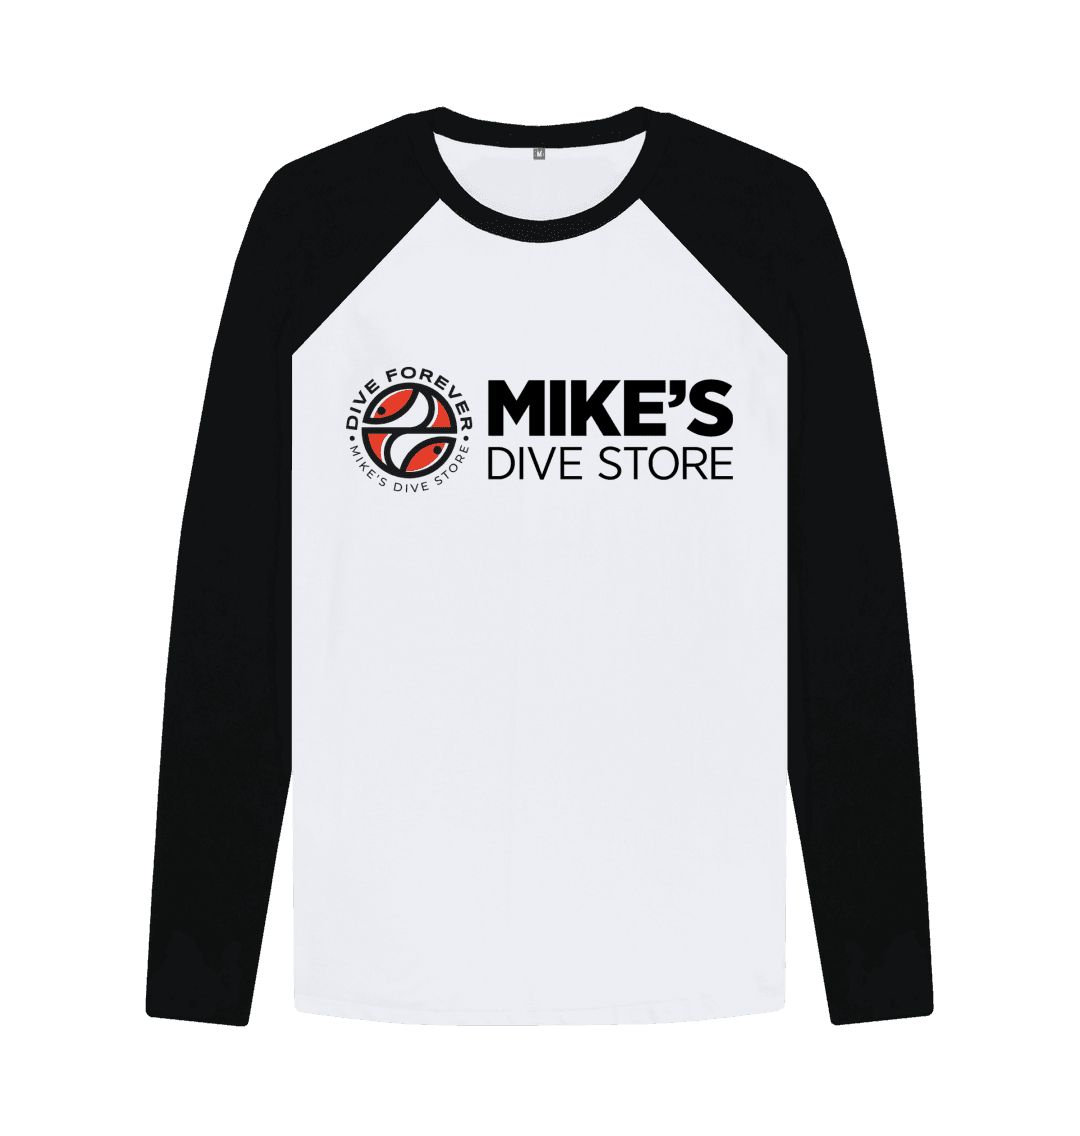 Mikes baseball shirt